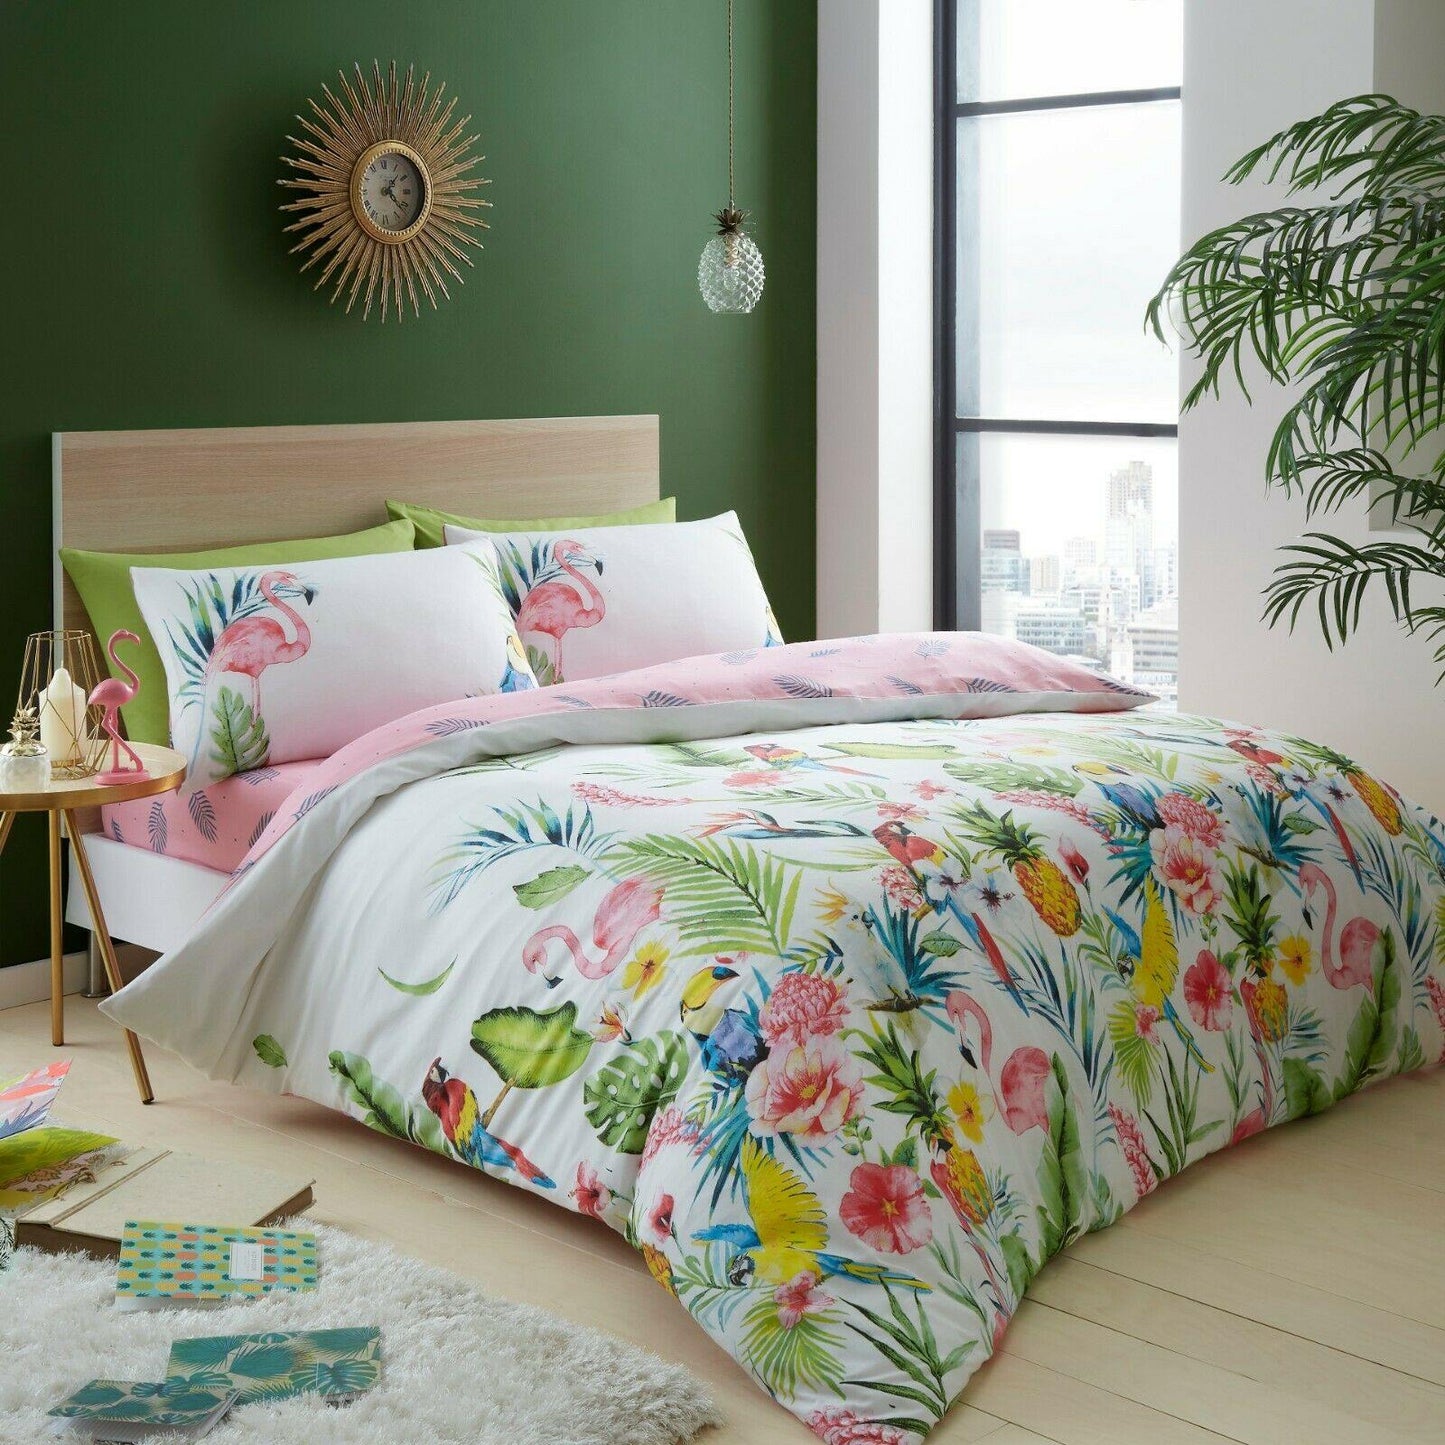 Tropical Floral Print Duvet Cover Reversible Polycotton Bedding Quilt Set - Kporium Home & Garden